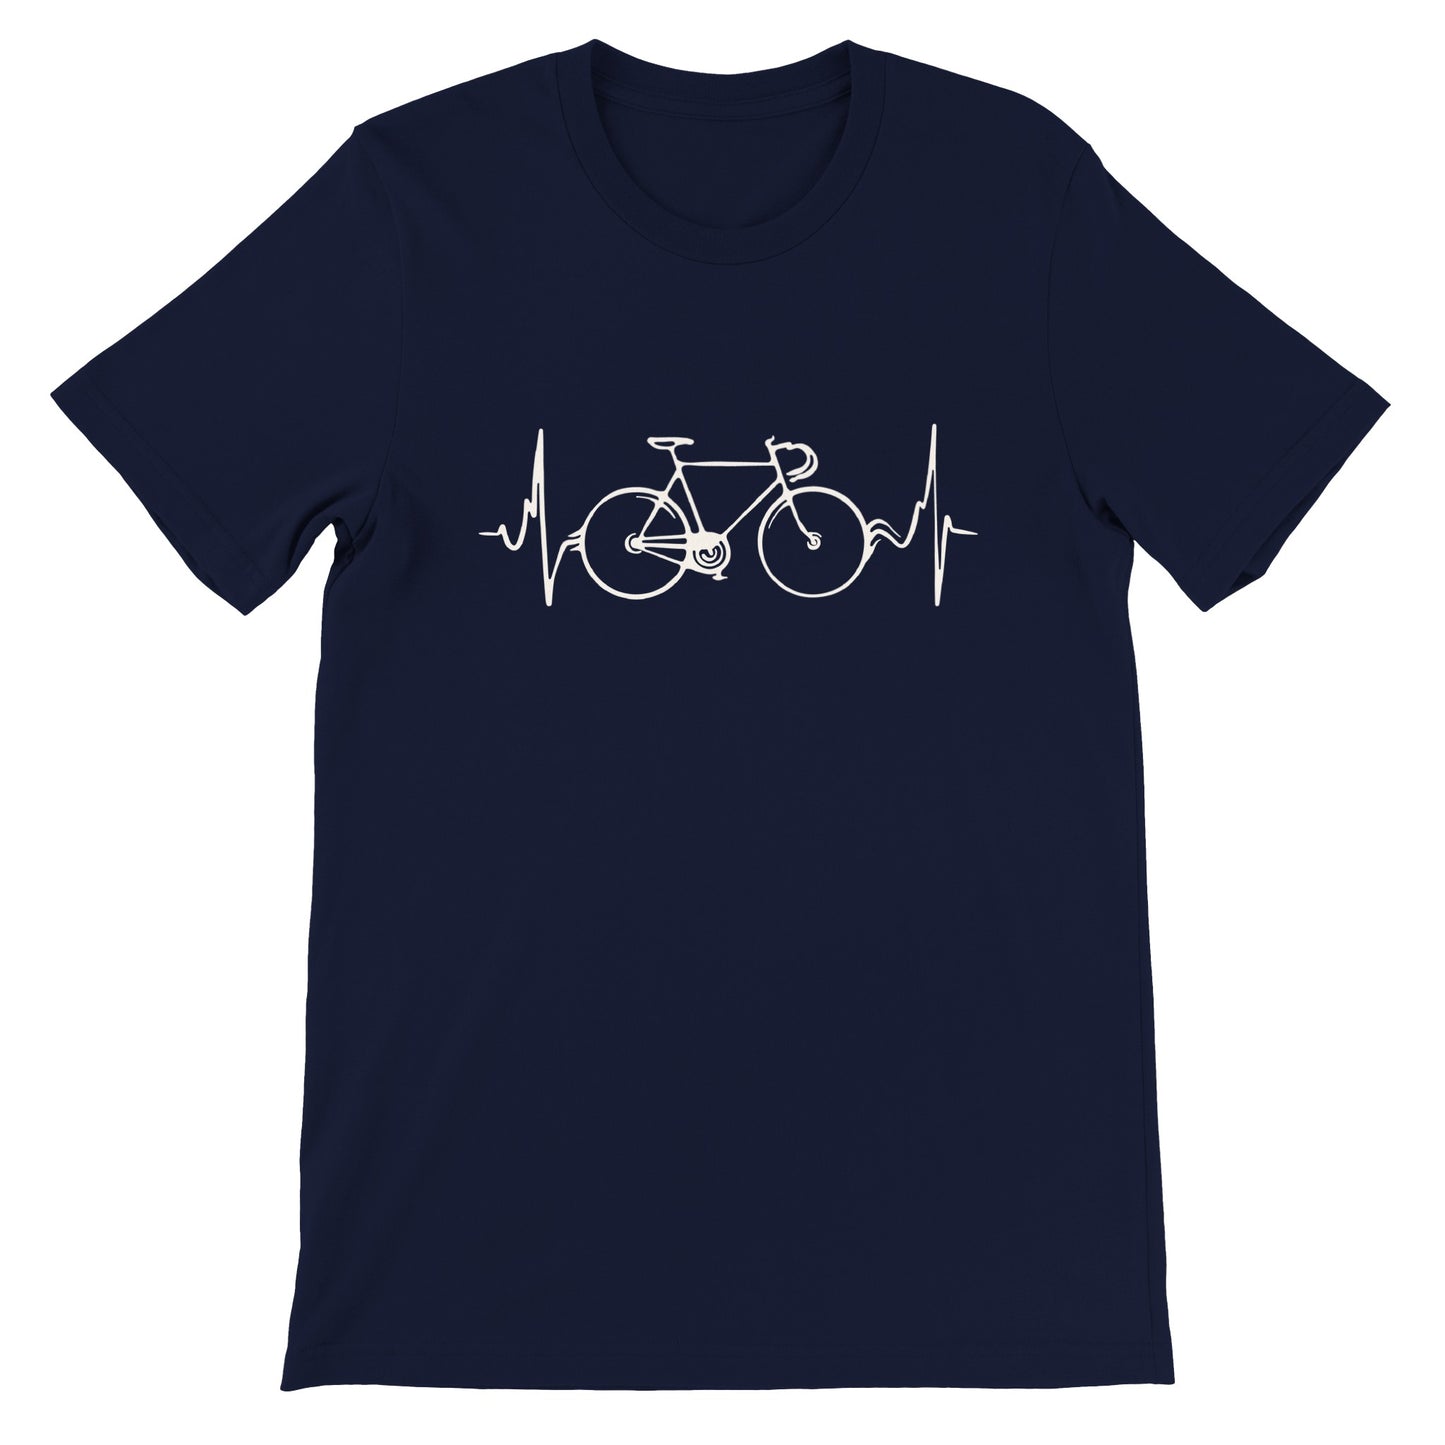 El ciclismo es la vida - Camiseta premium unisex de cuello redondo